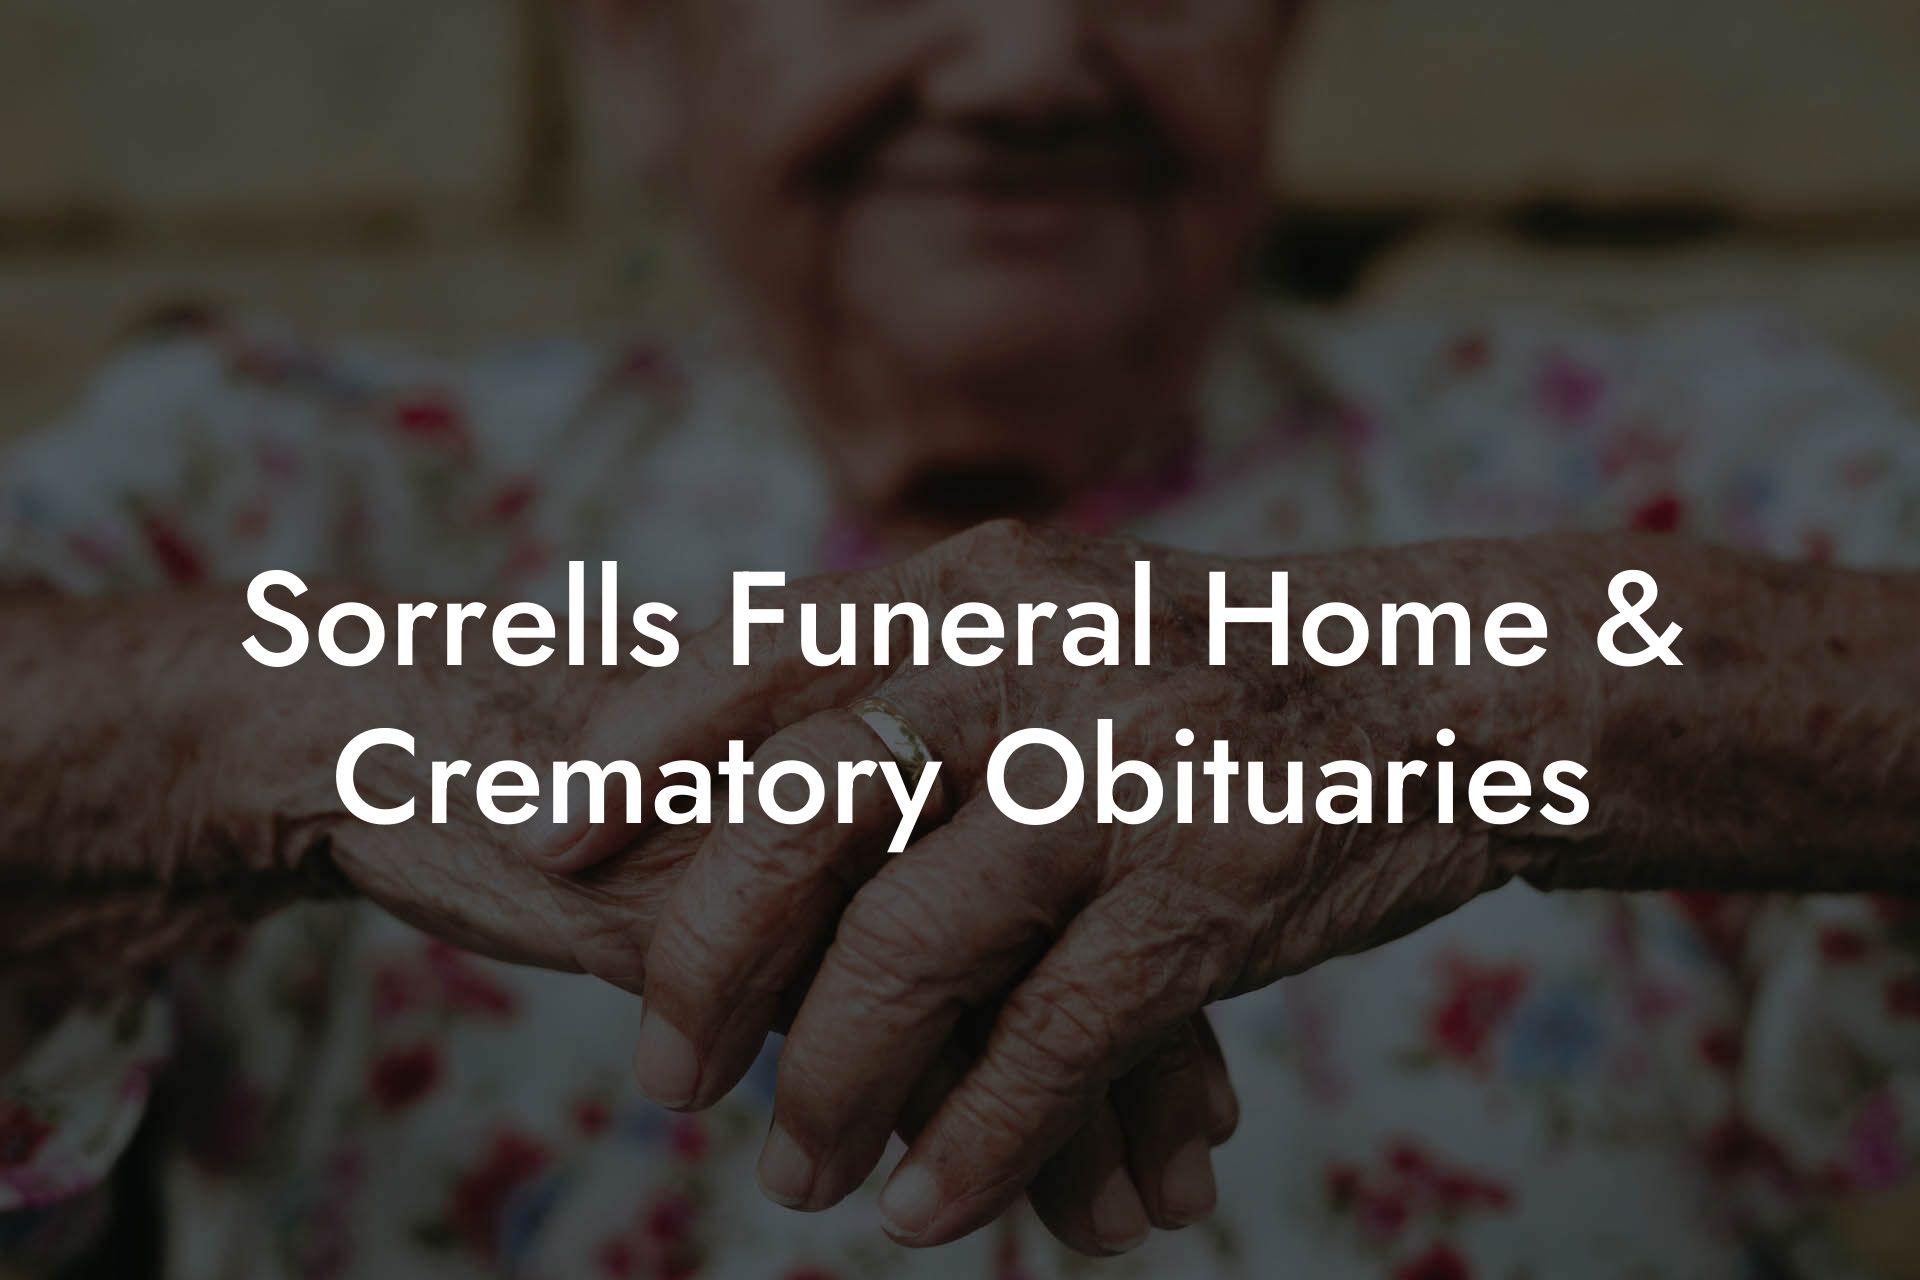 Sorrells Funeral Home & Crematory Obituaries